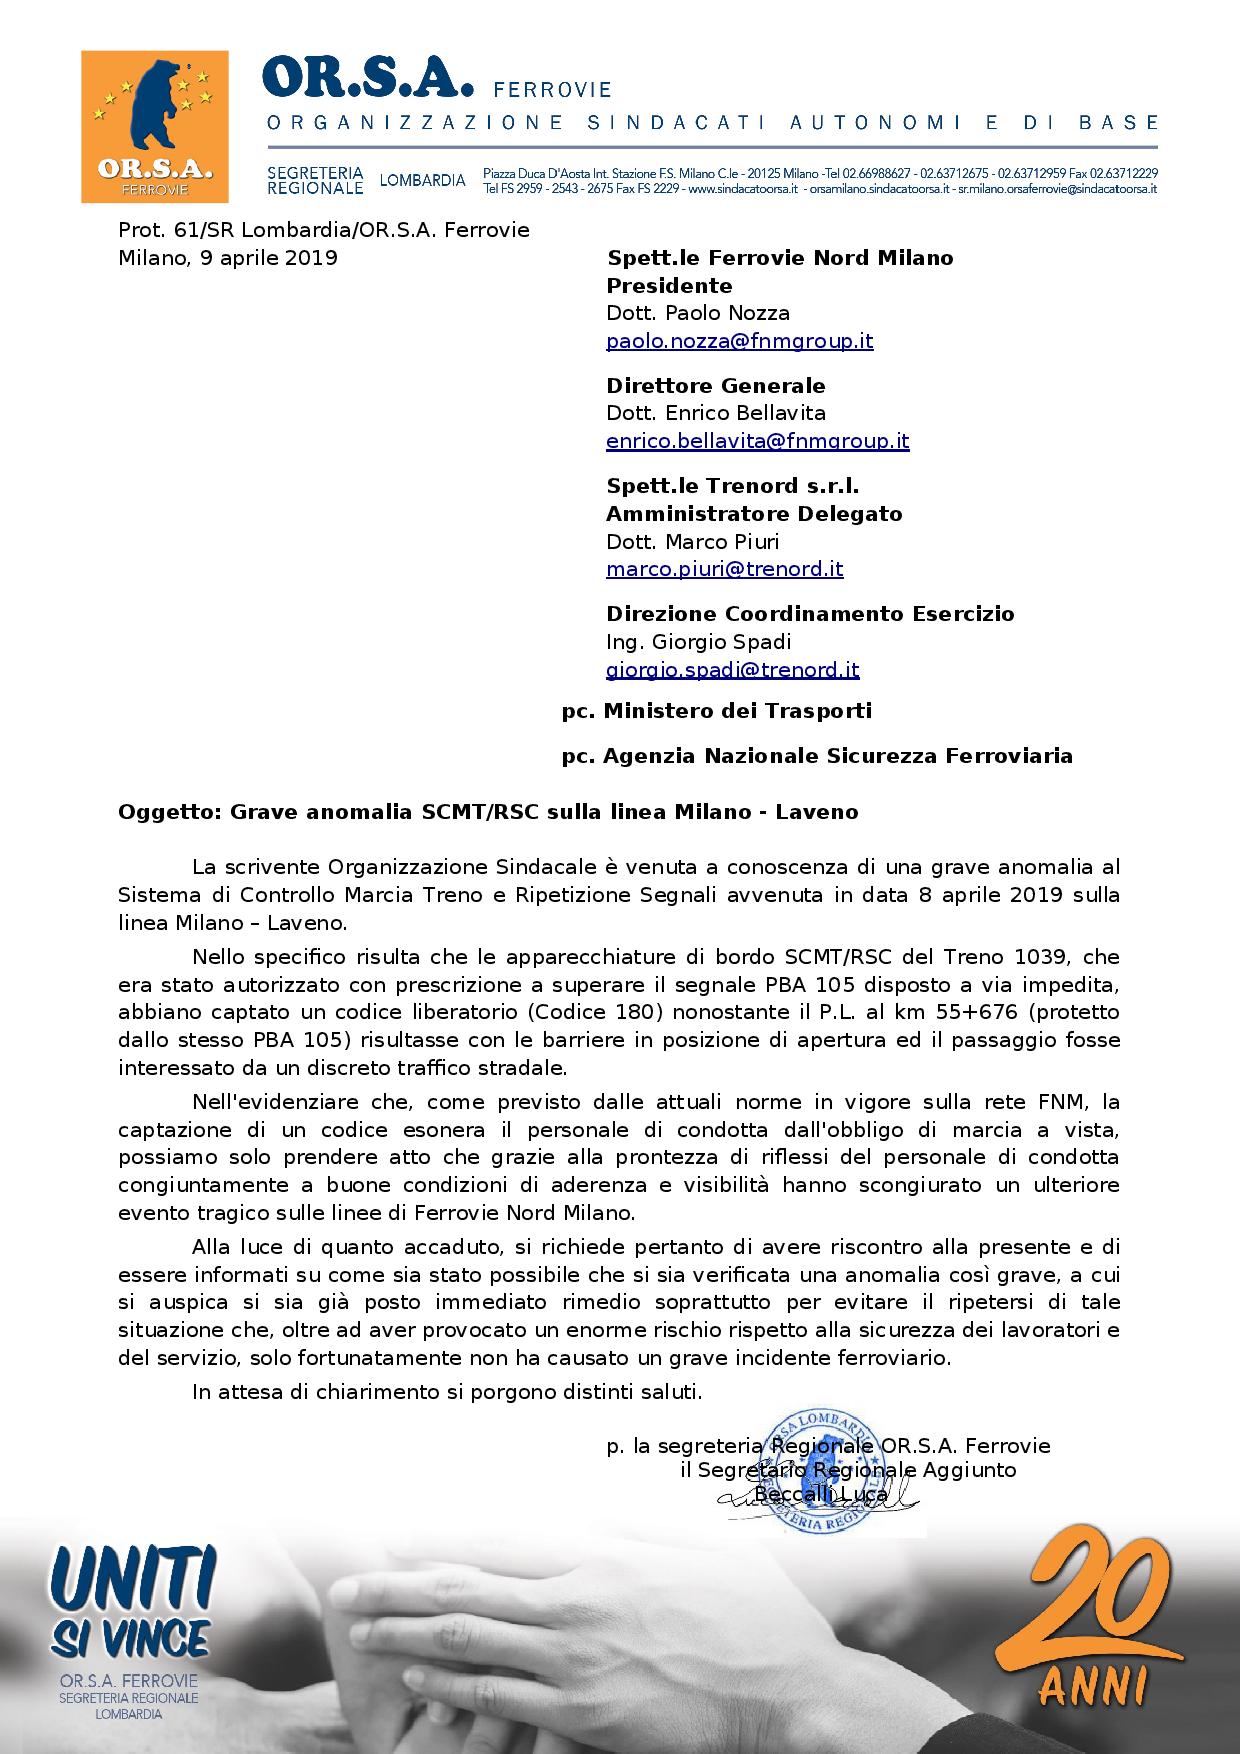 Grave anomalia SCMT RSC sulla linea Milano Laveno page 001